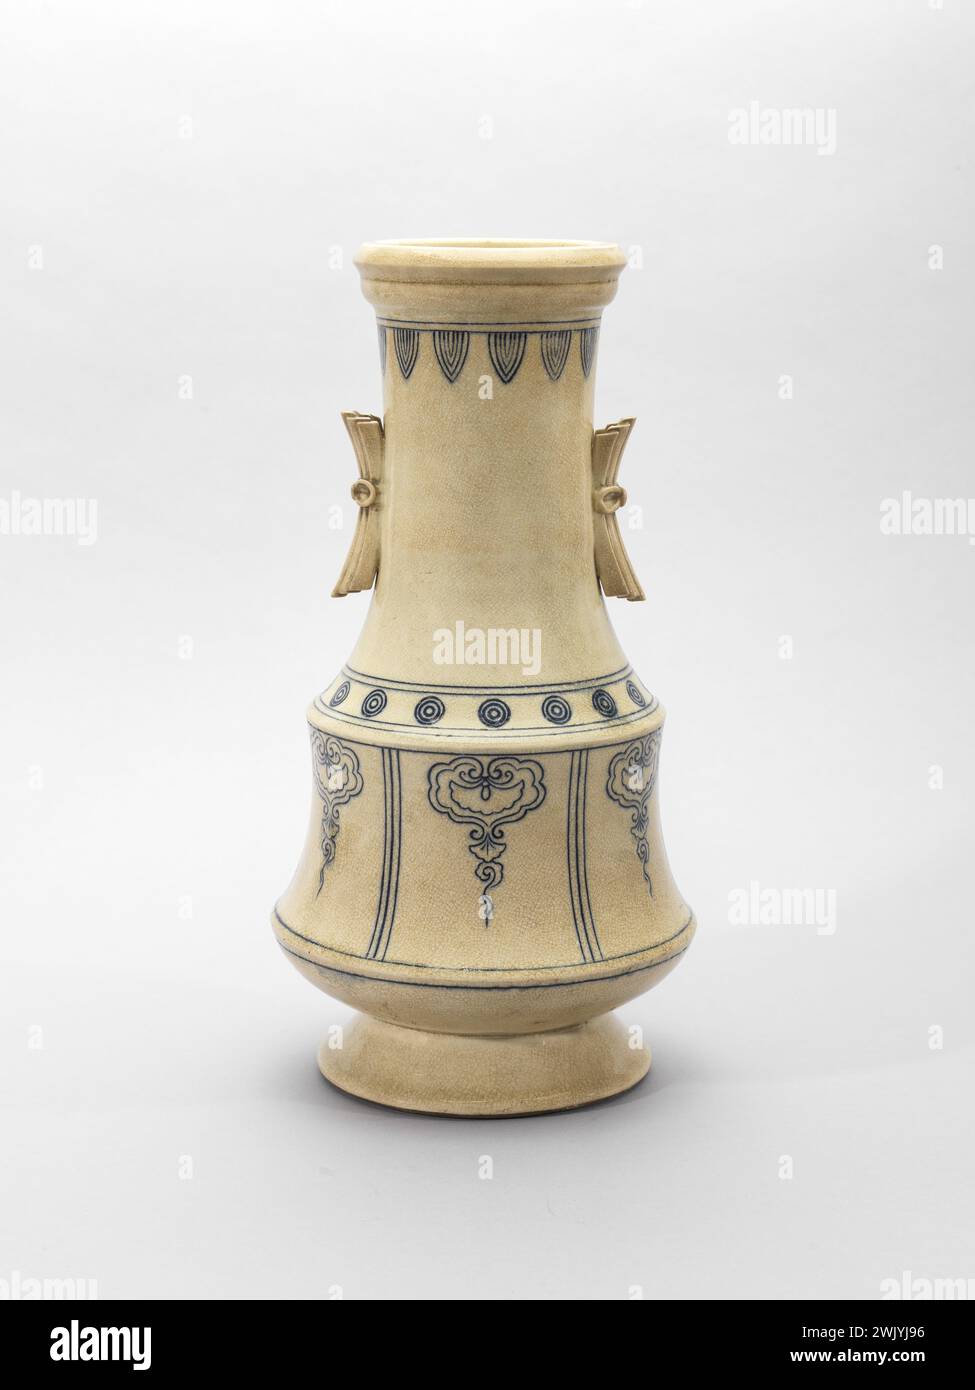 Satsuma (région de production de céramique) vase à fleurs (Hana-IKE) (nom usuel), 1750. Incrustation sous le couvercle. Musée Cernuschi, Musée asiatique de l'Asie dans la ville de Paris. Banque D'Images